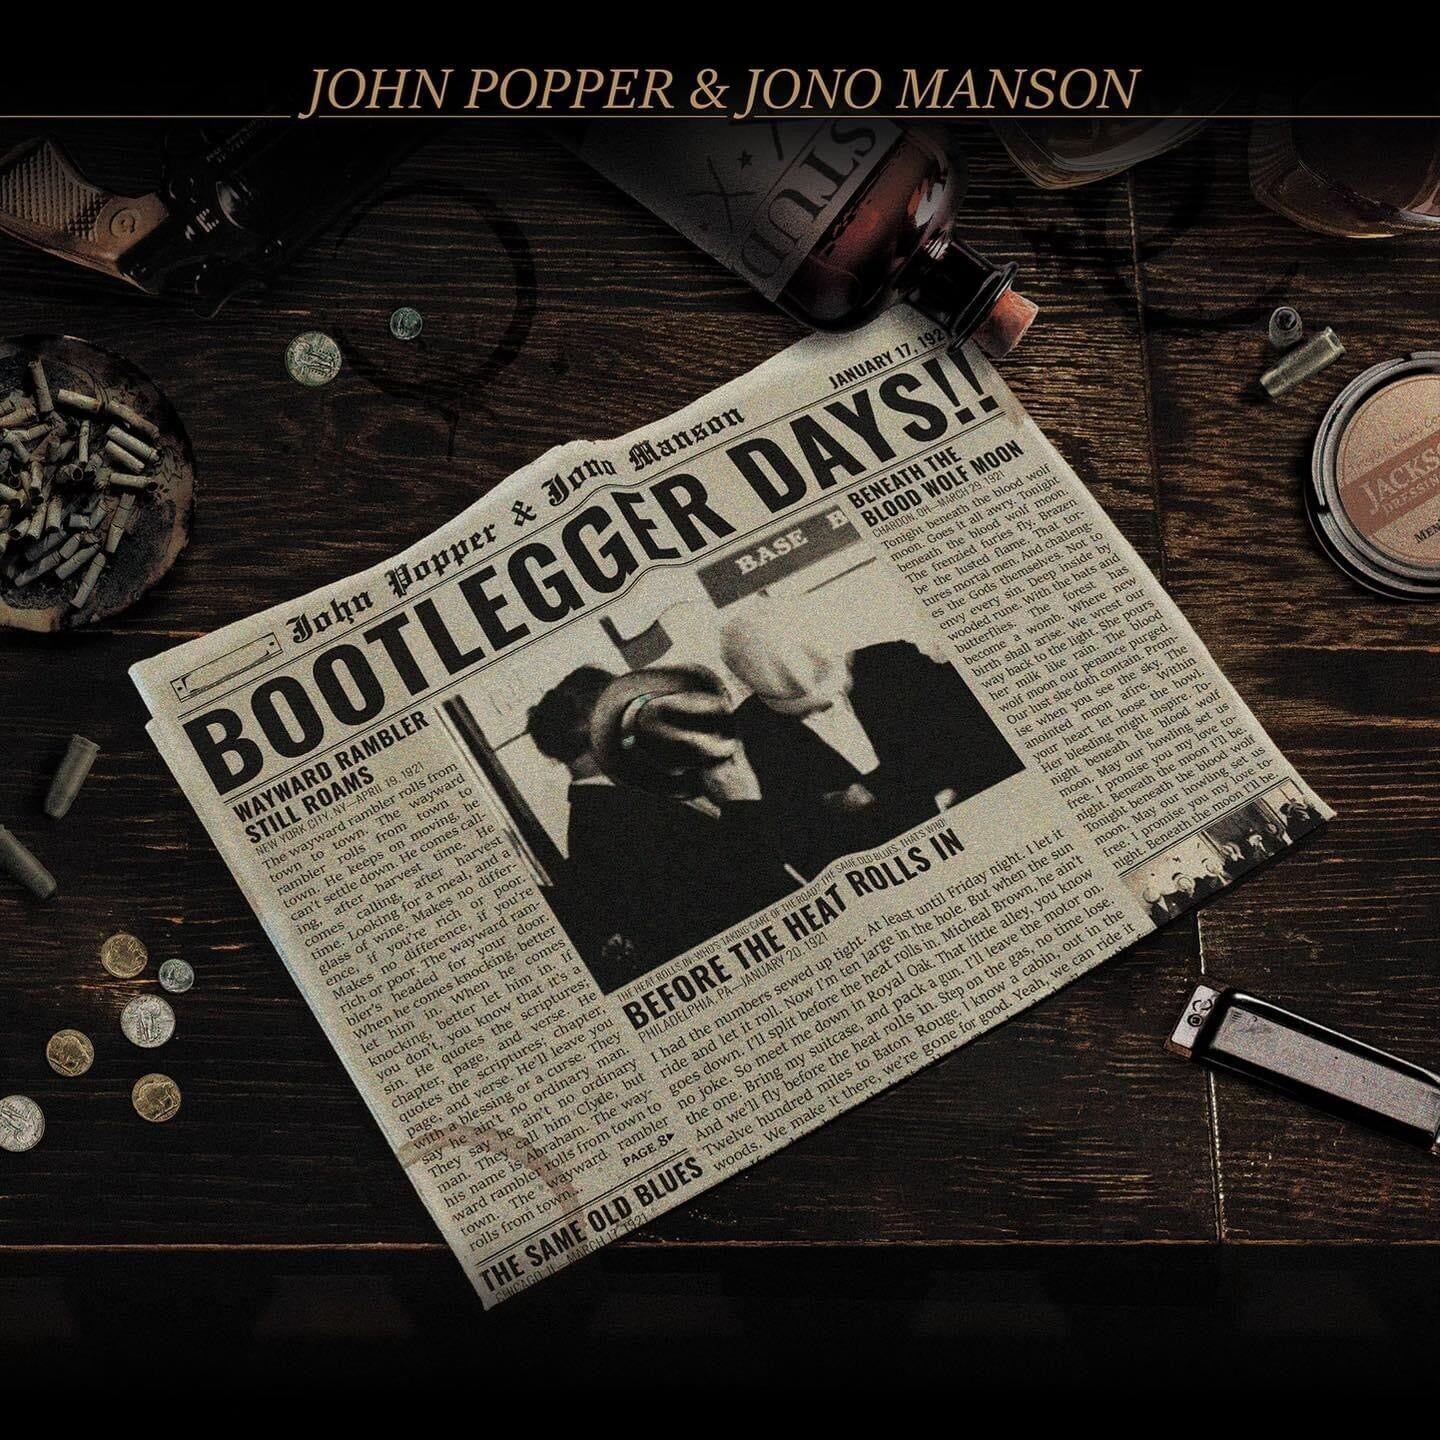 POPPER JOHN - & JONO MANSON - Bootlegger Days!